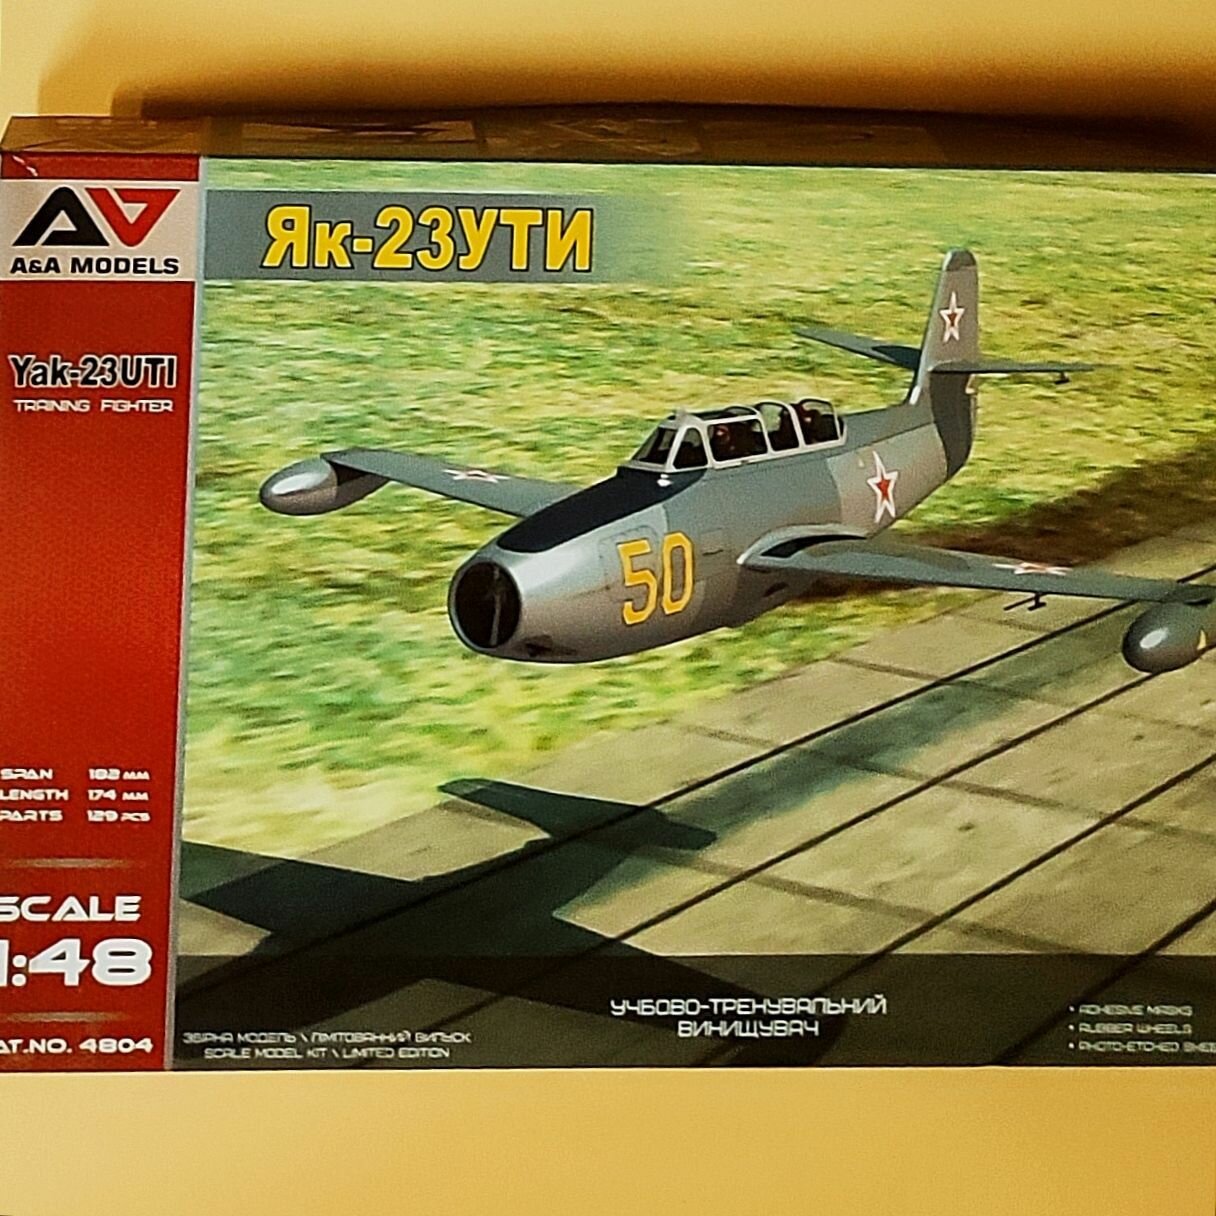 Сборная модель самолета ОКБ Яковлева тип 23УТИ, A&A Models, AA4804, 1/48